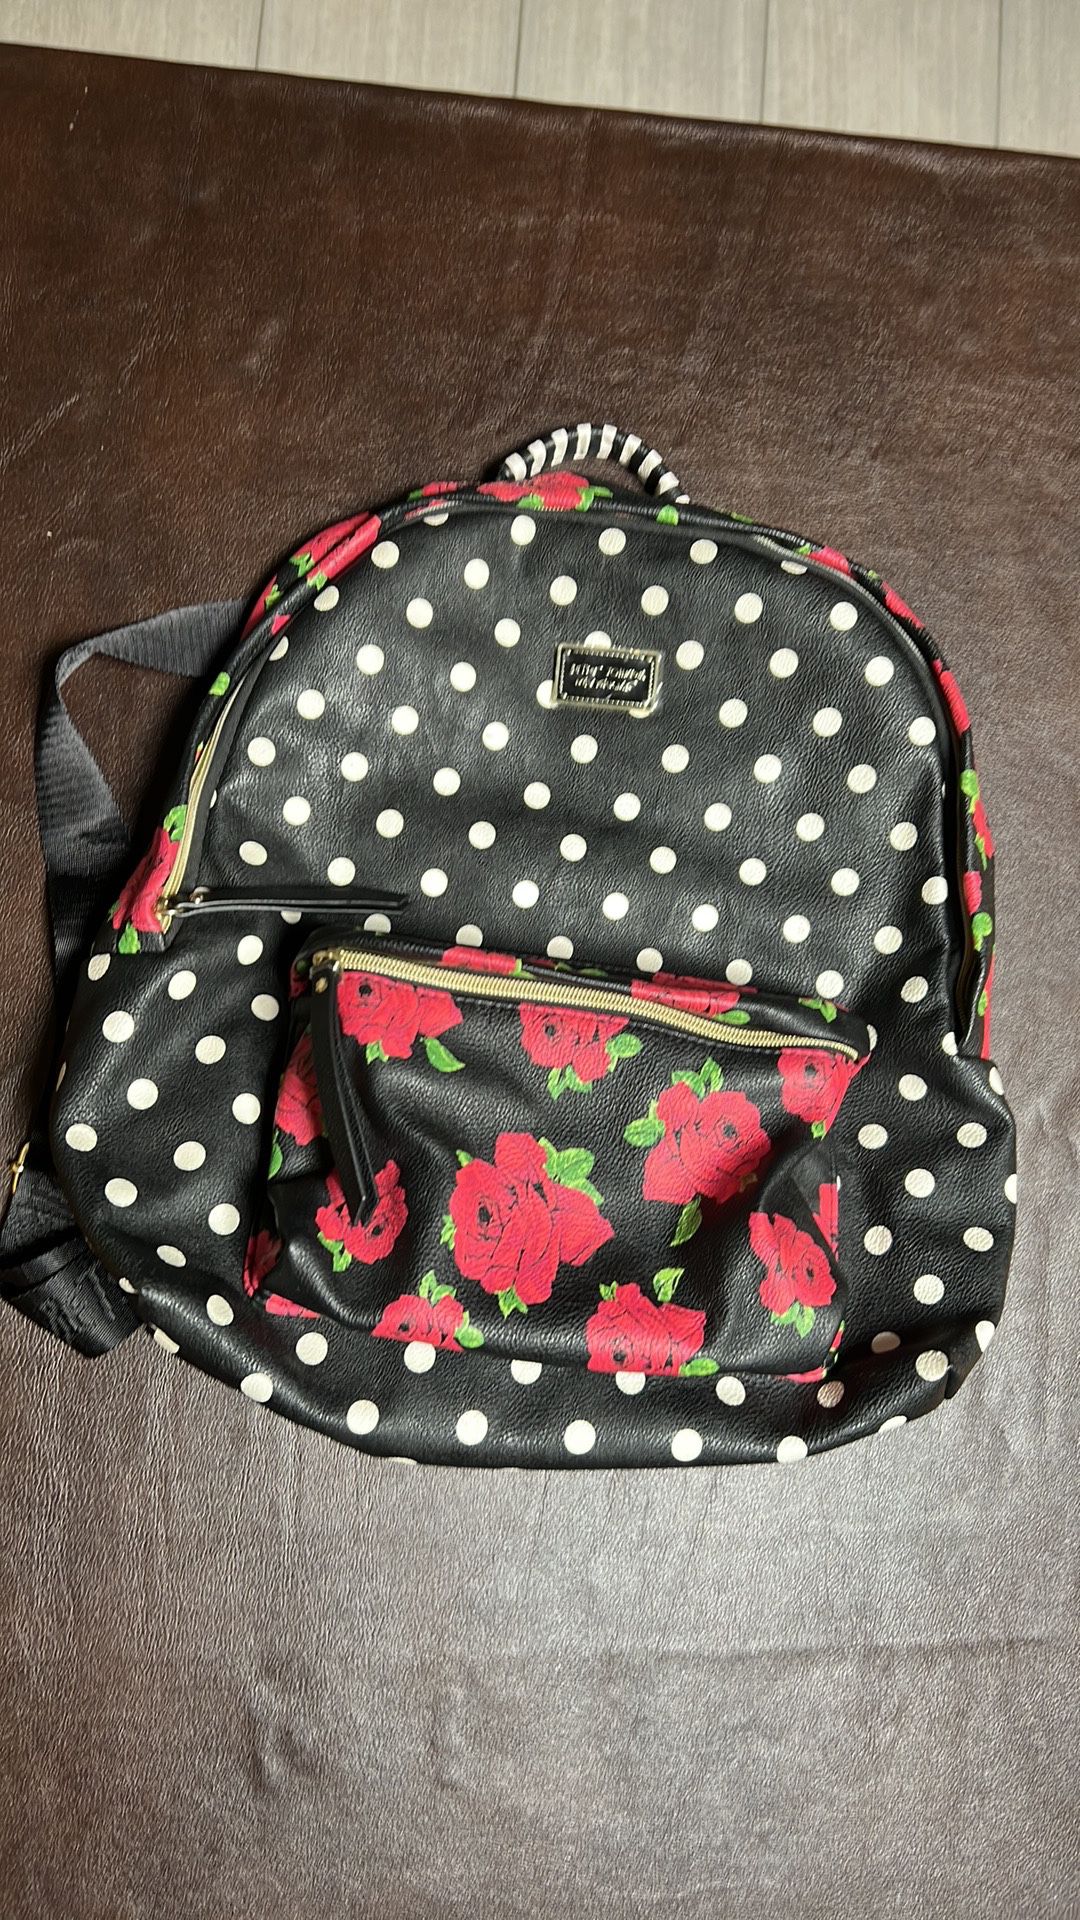 Polkadot & roses, leather, backpack, Betsey, Johnson, NWOT, black, white, red, White 